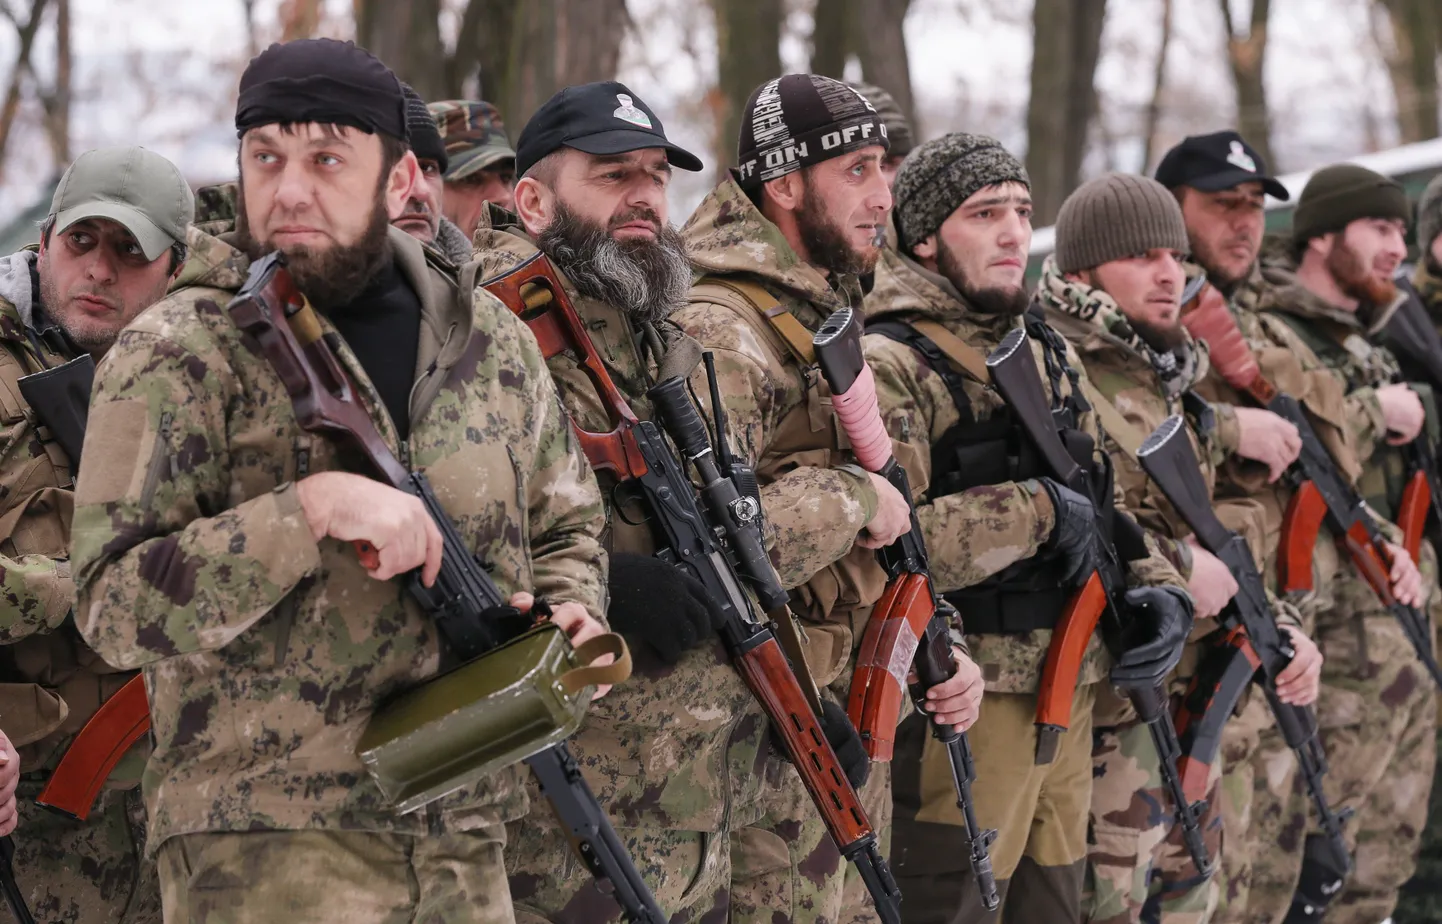 Venemeelsete separatistide kõrval võitlevad tšetšeenid. Tšetšeene võitleb ka Ukraina valitsusvägede ridades.